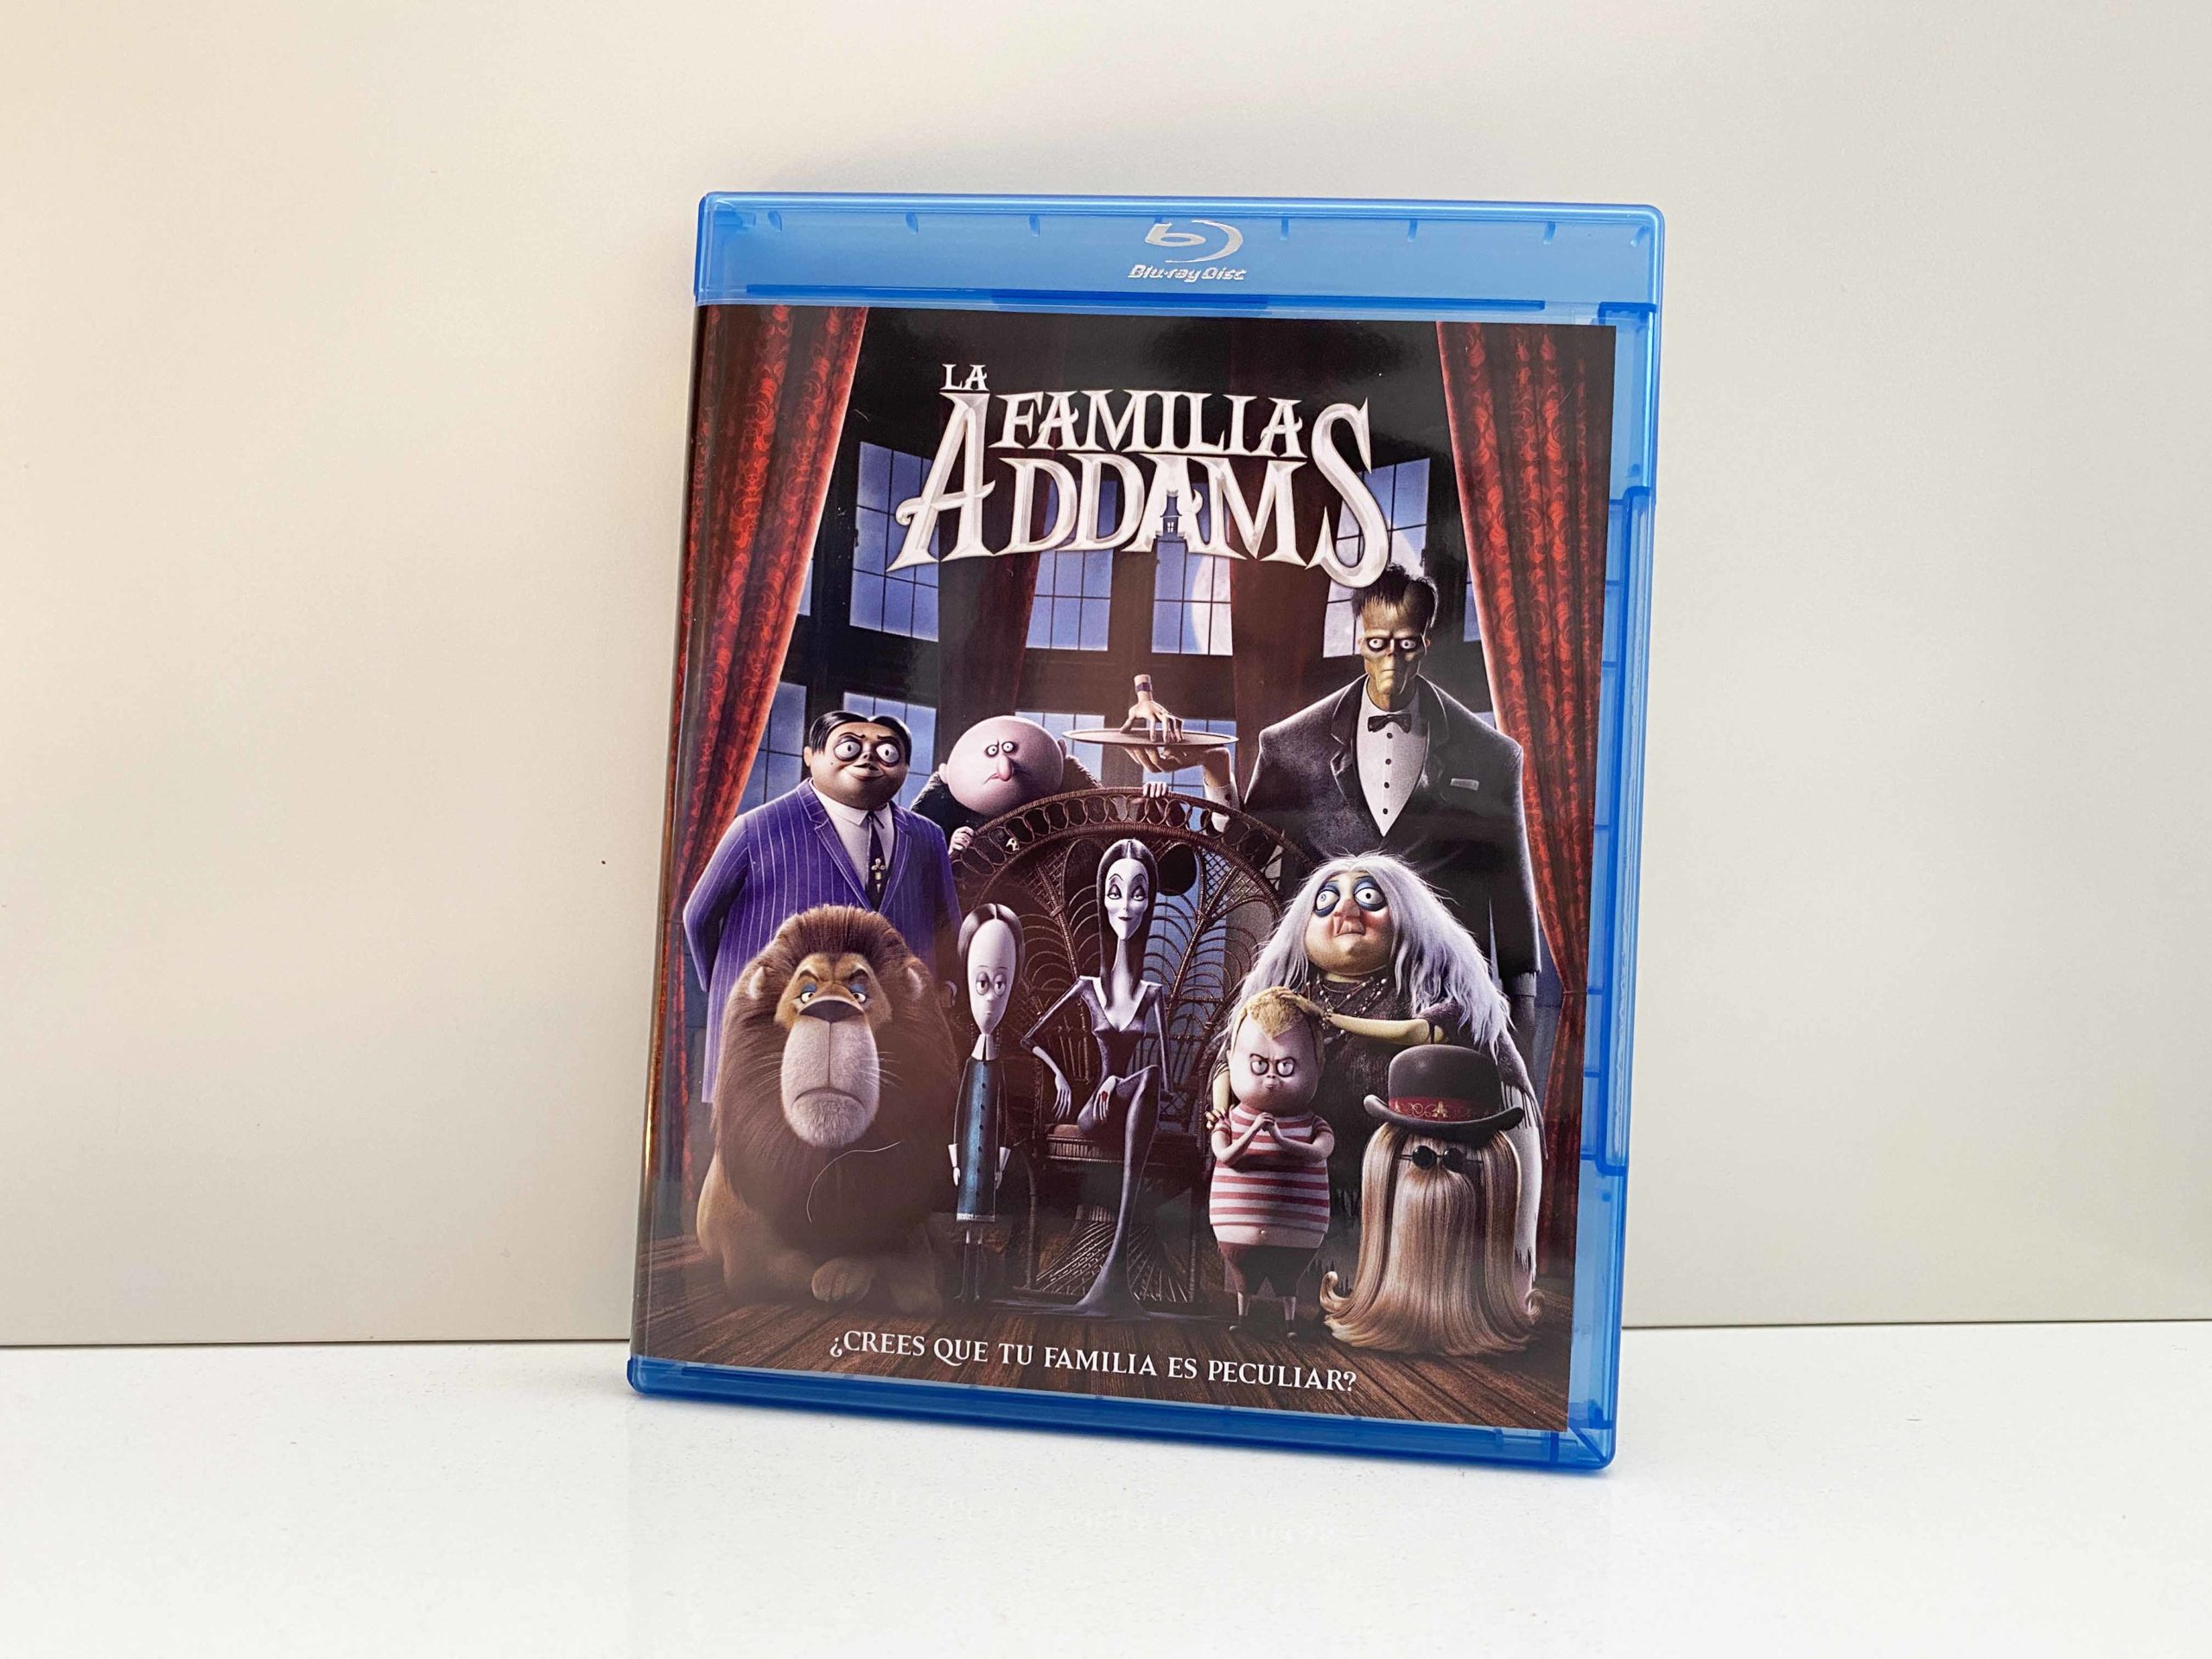 Análisis del Blu-ray de ‘La familia Addams’